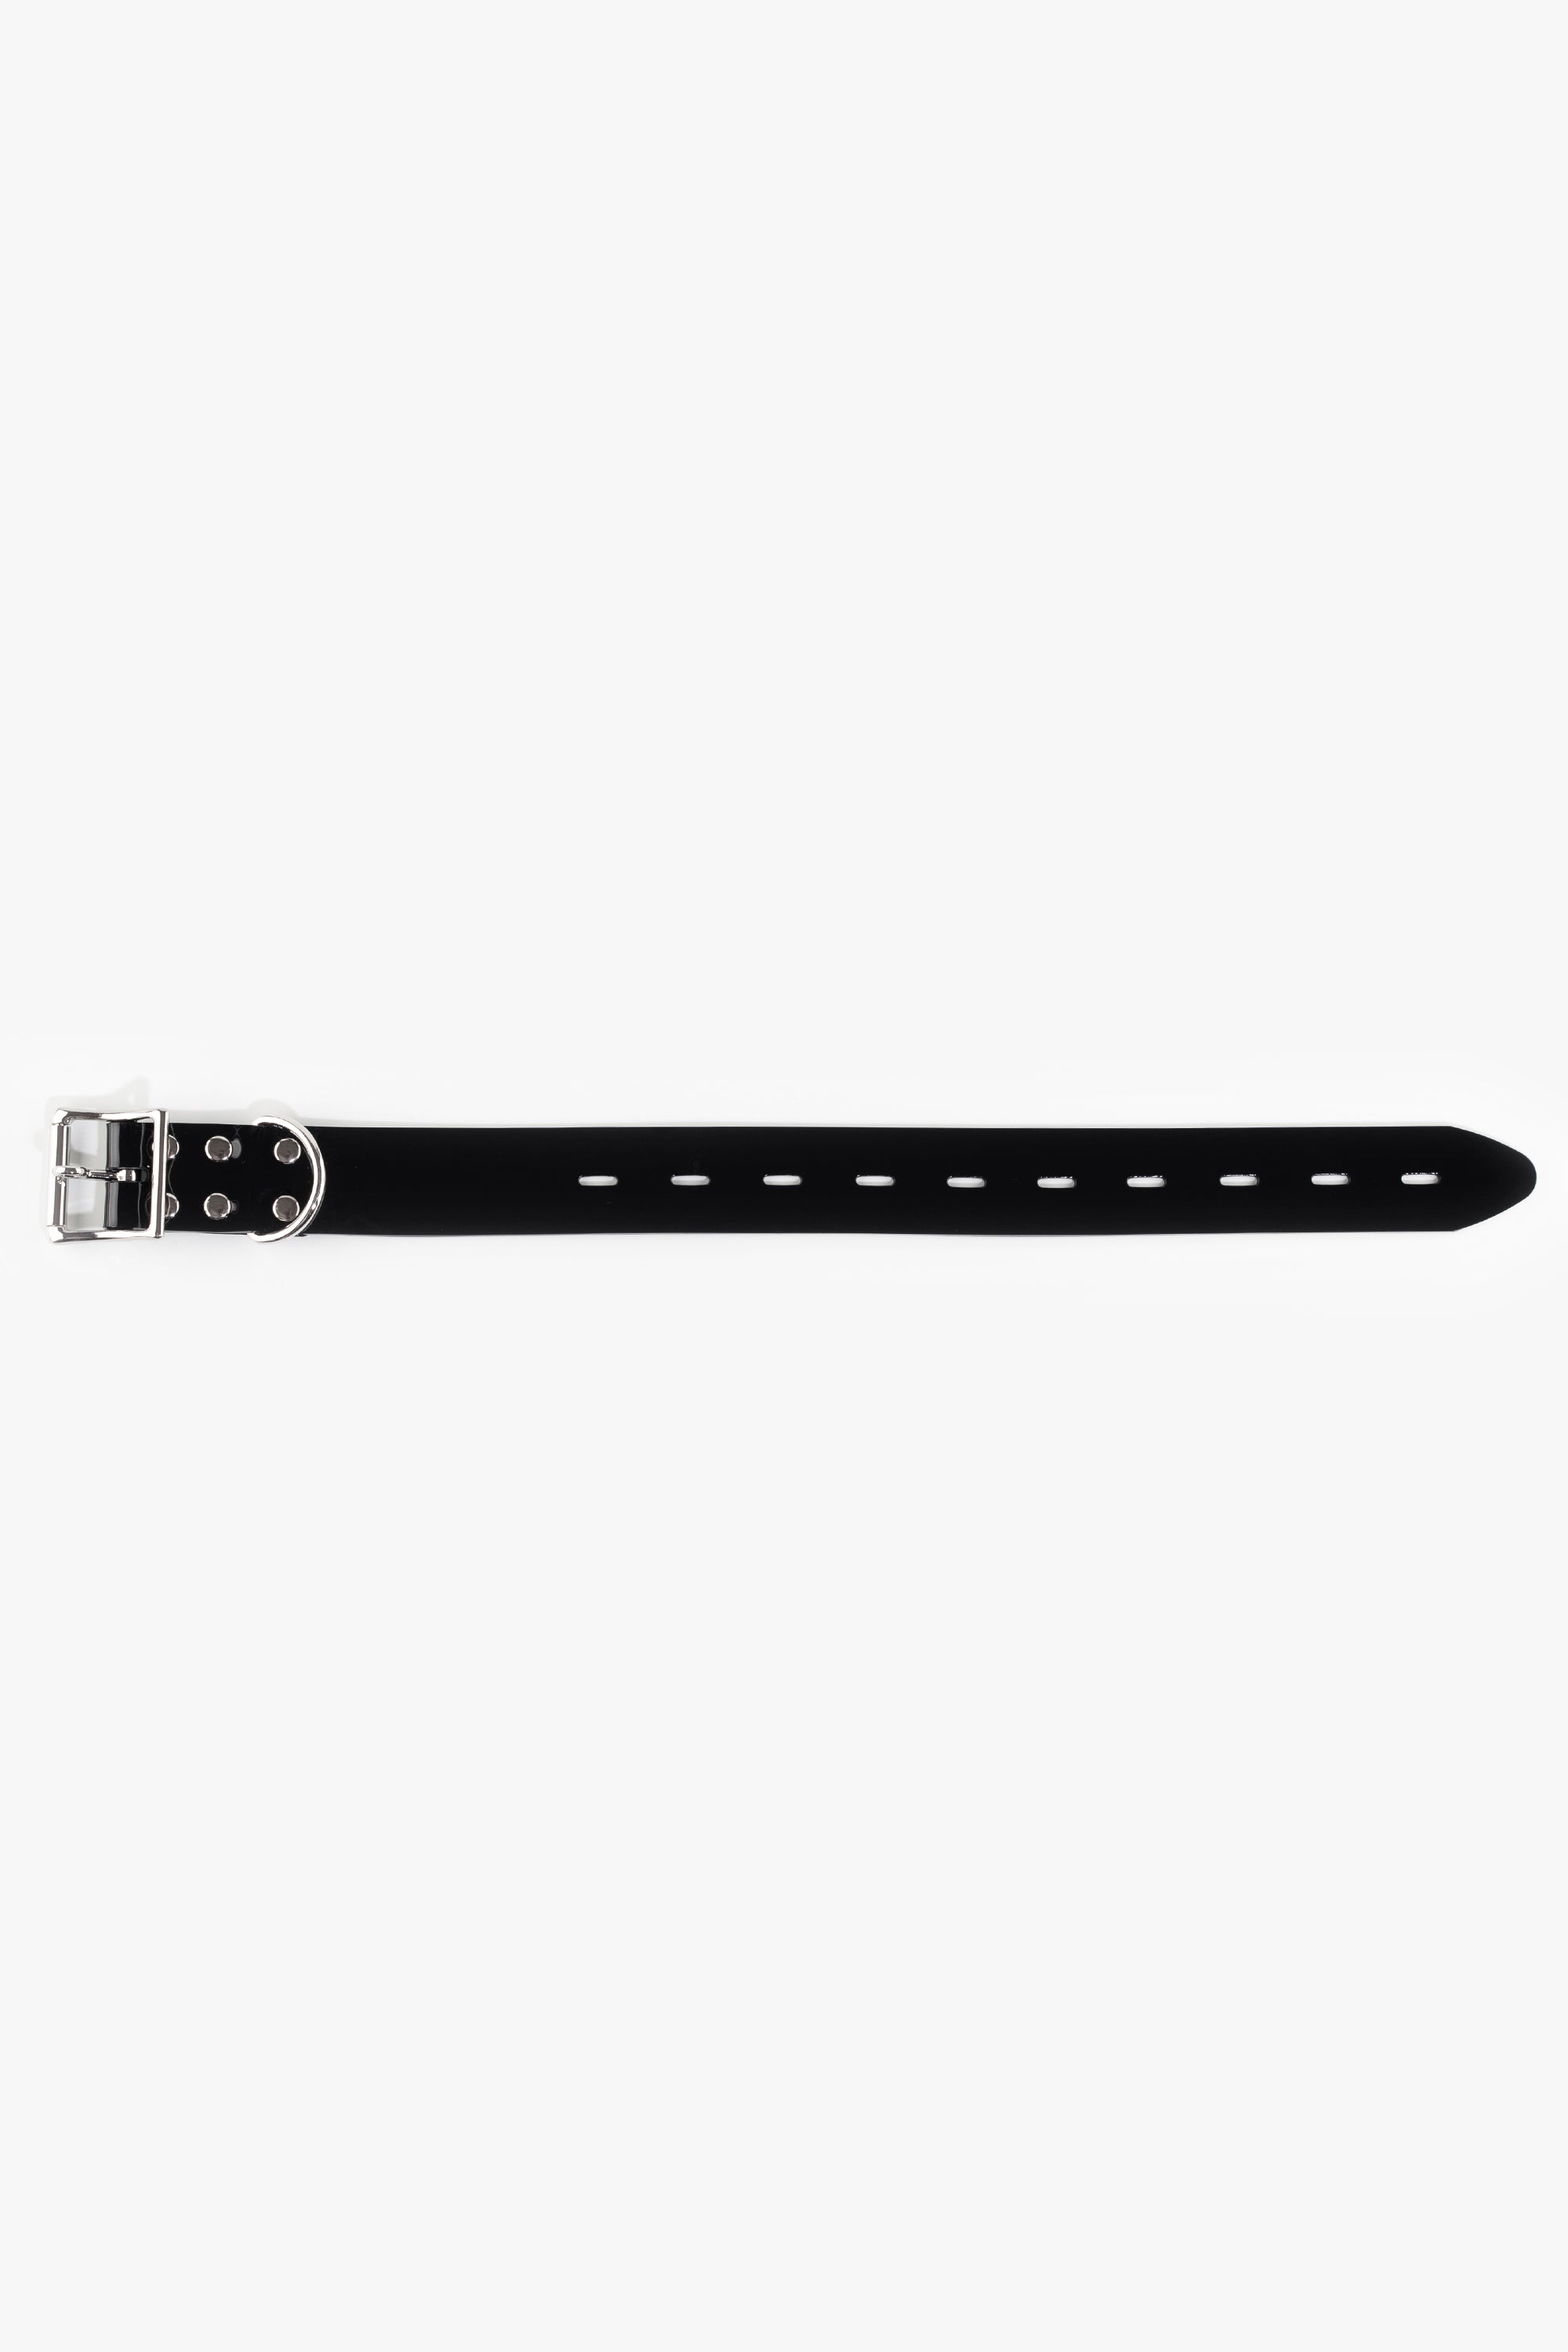 Bondage PVC strap with lockable buckle 32 mm, different lengths, black/chrome